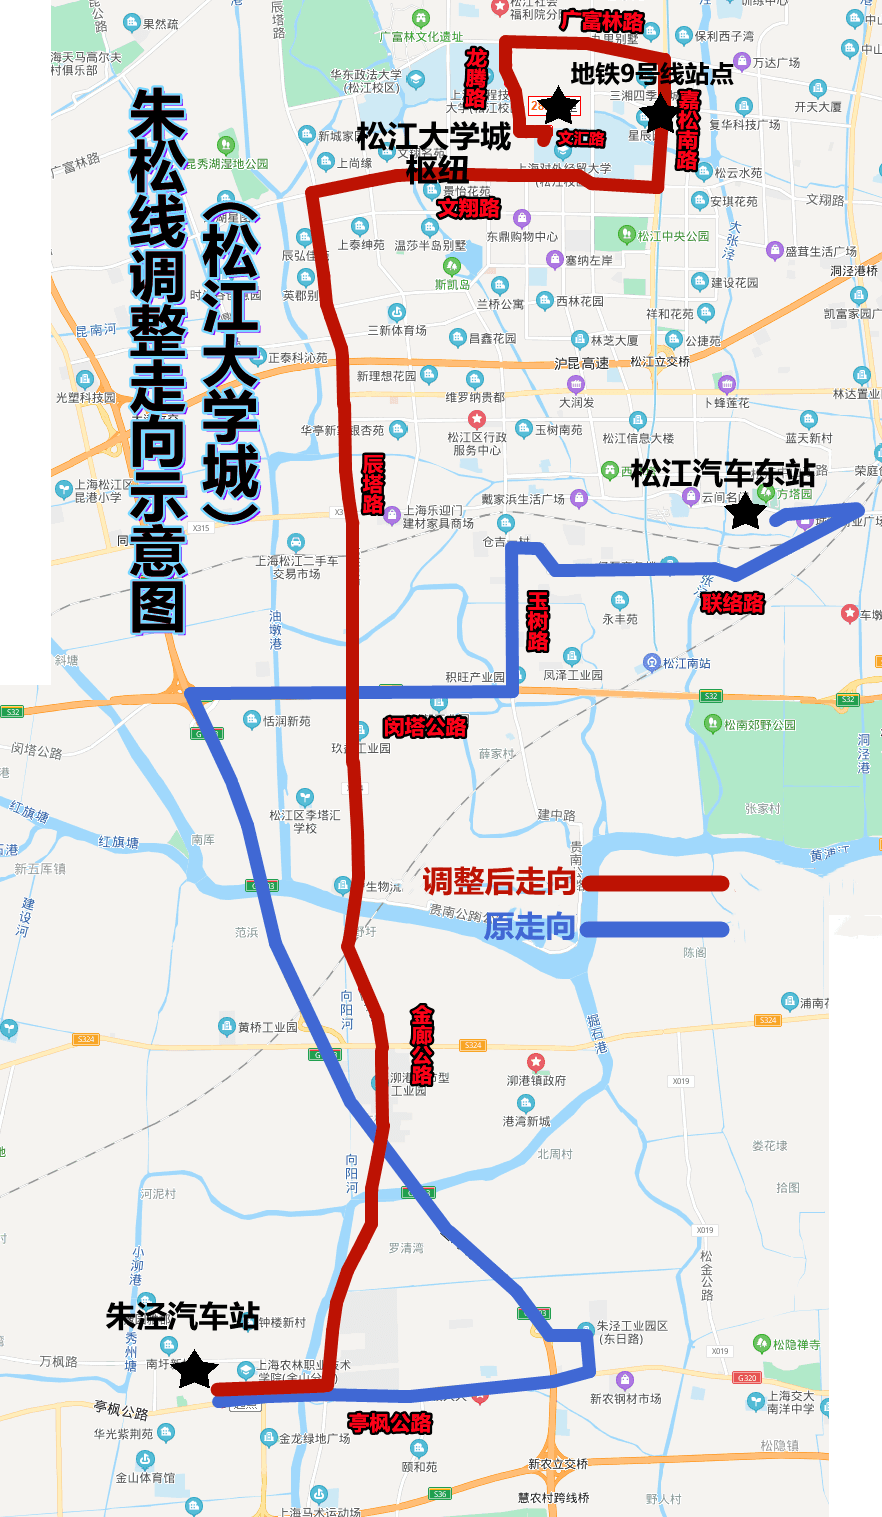 注意12月26日起将对朱松线线路走向进行调整